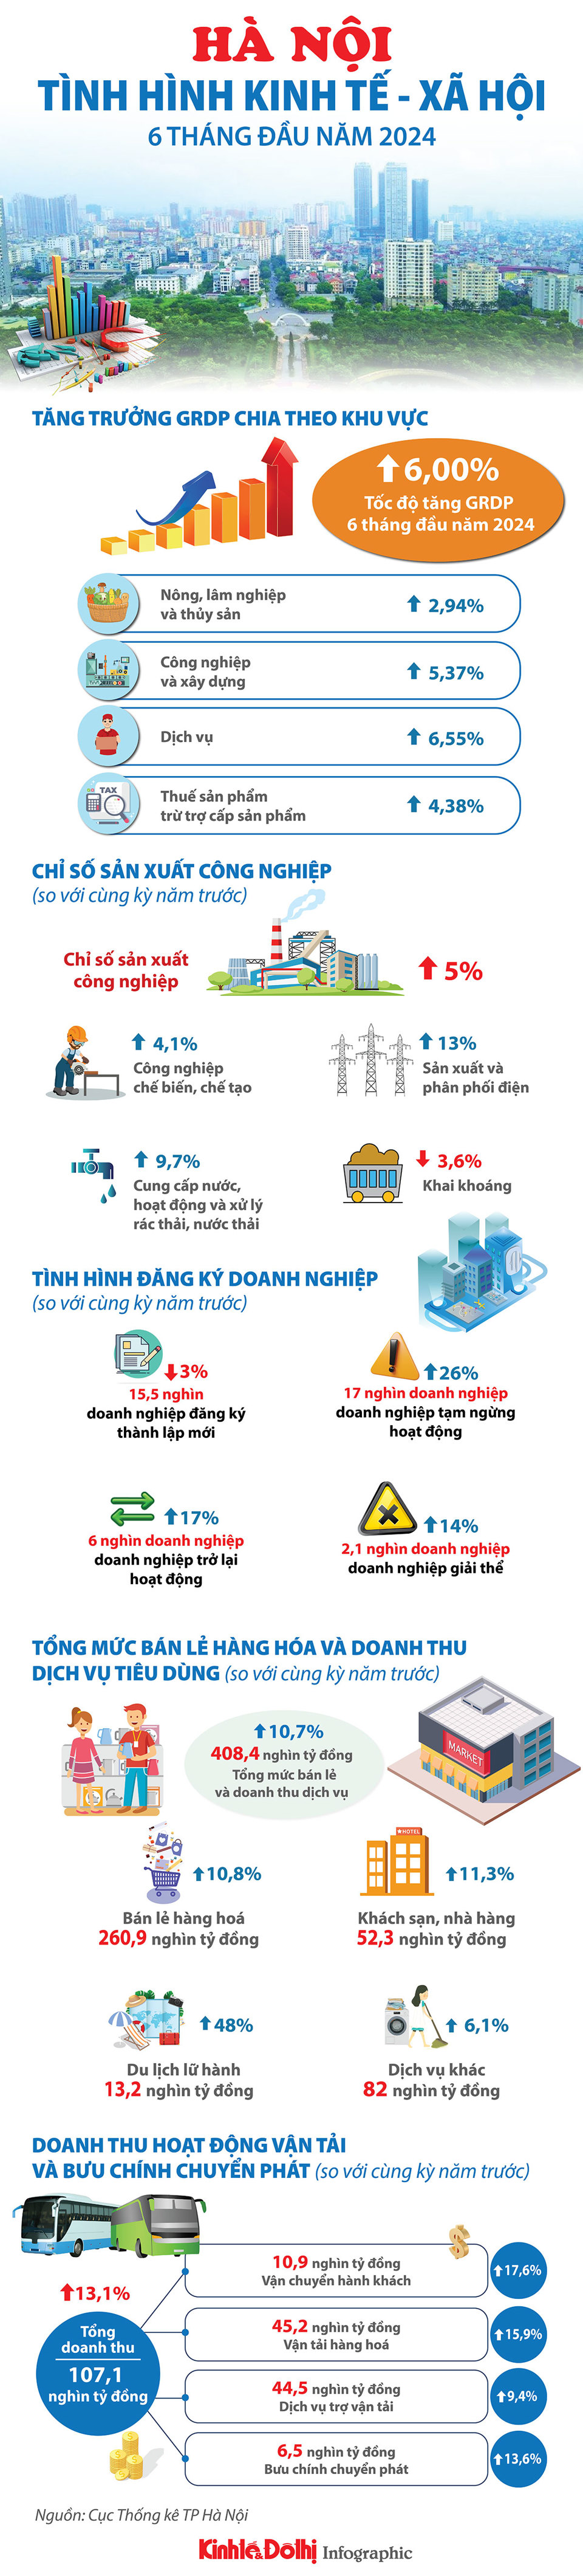 Tổng quan tình hình kinh tế-xã hội của Hà Nội 6 tháng đầu năm 2024 - Ảnh 1